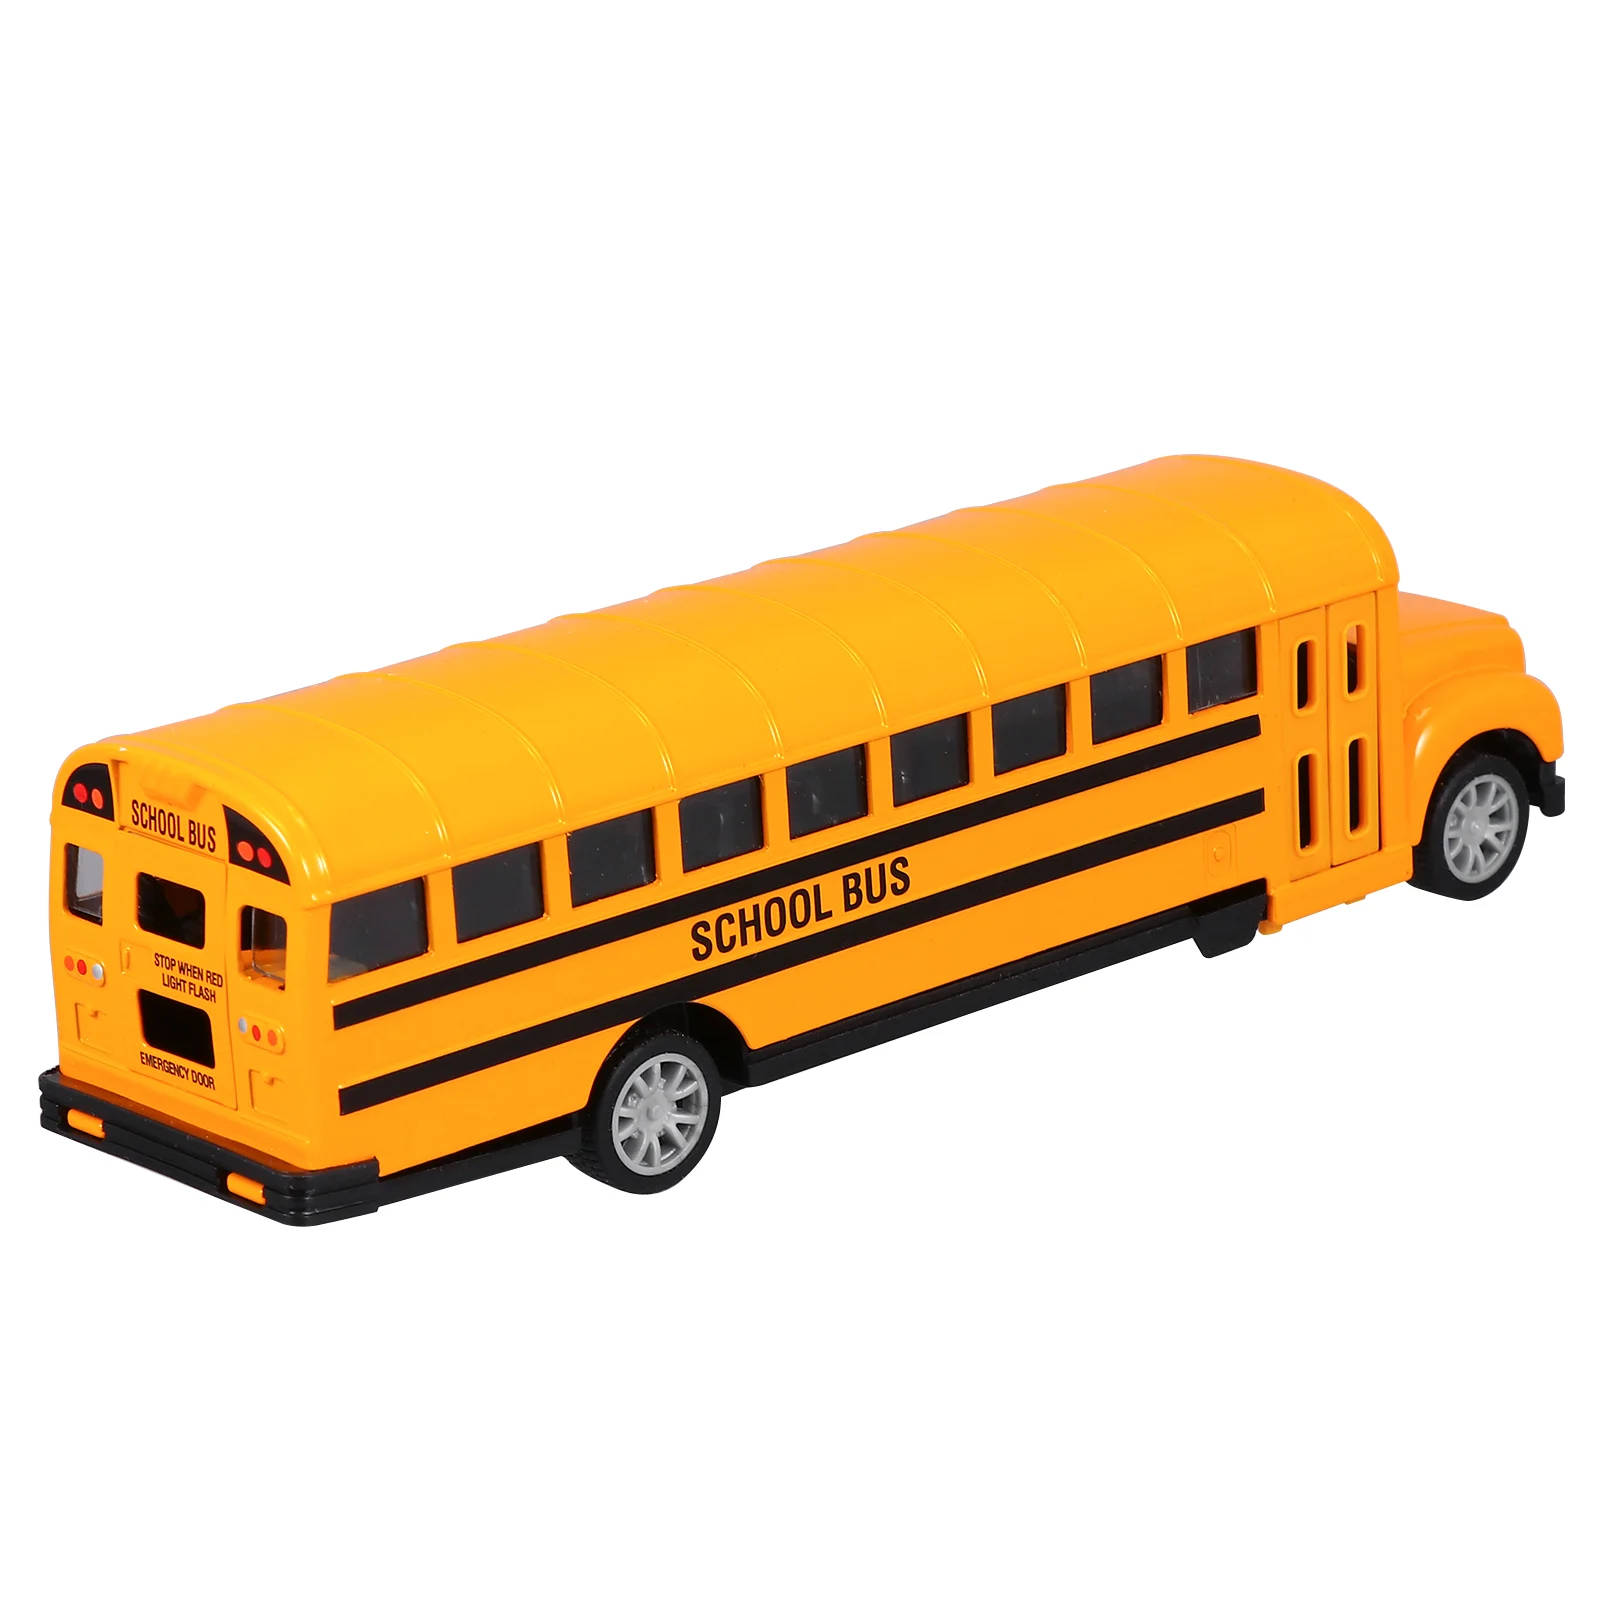 

Школьный автобус игрушечный автомобиль задняя часть желтая школьный автобус игрушки модель настольное украшение подарок вечерние сувениры лучший подарок на день рождения для мальчиков: 24